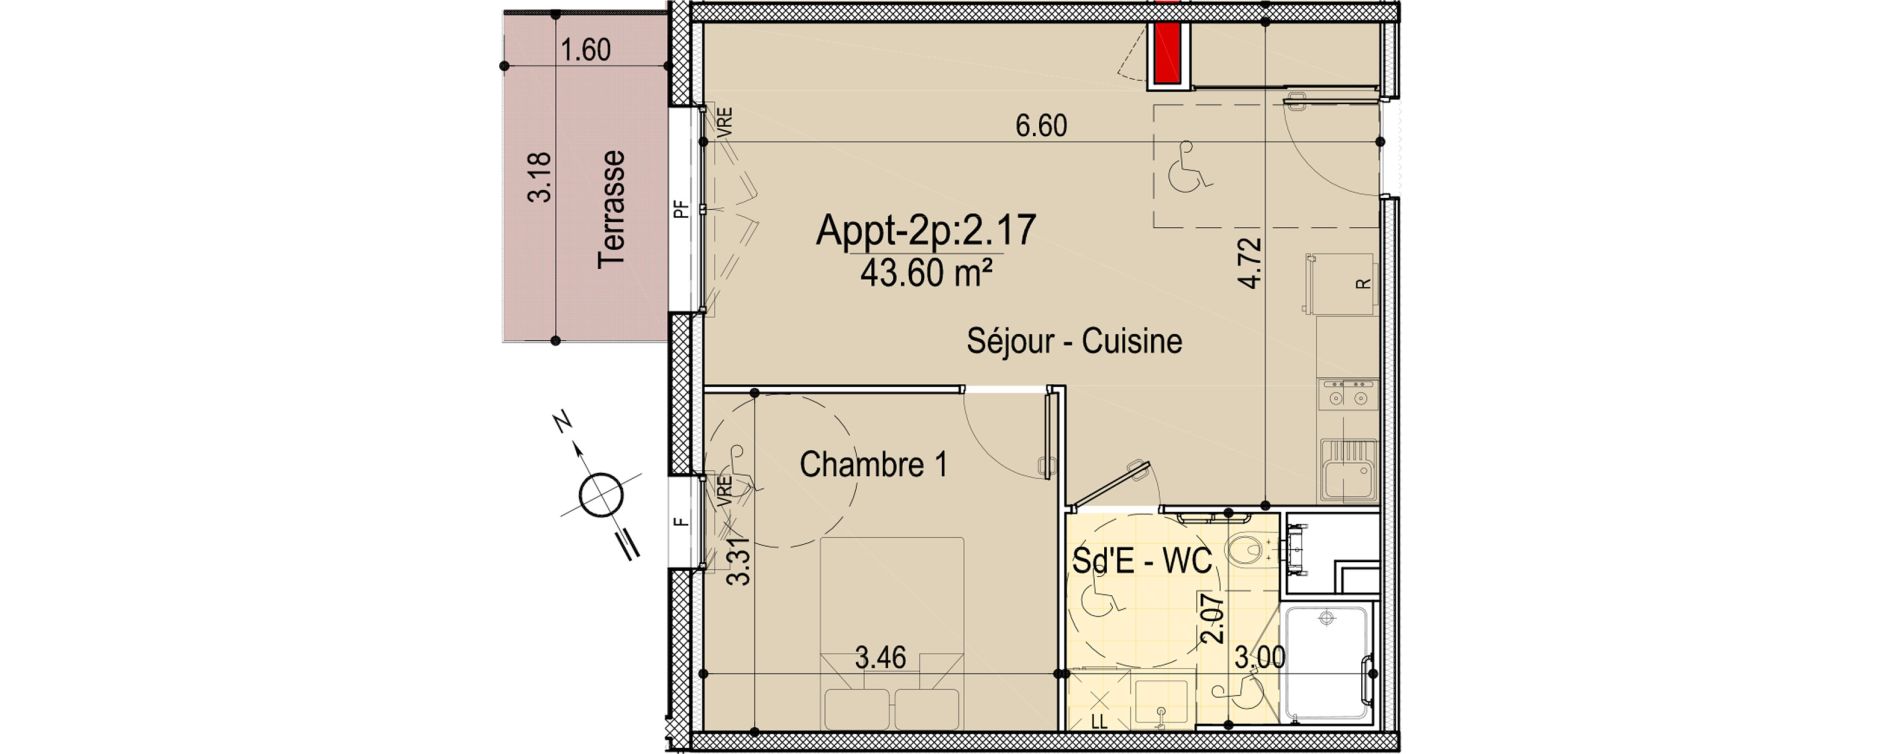 Appartement T2 de 43,60 m2 aux Sables-D'Olonne Le chateau d olonne